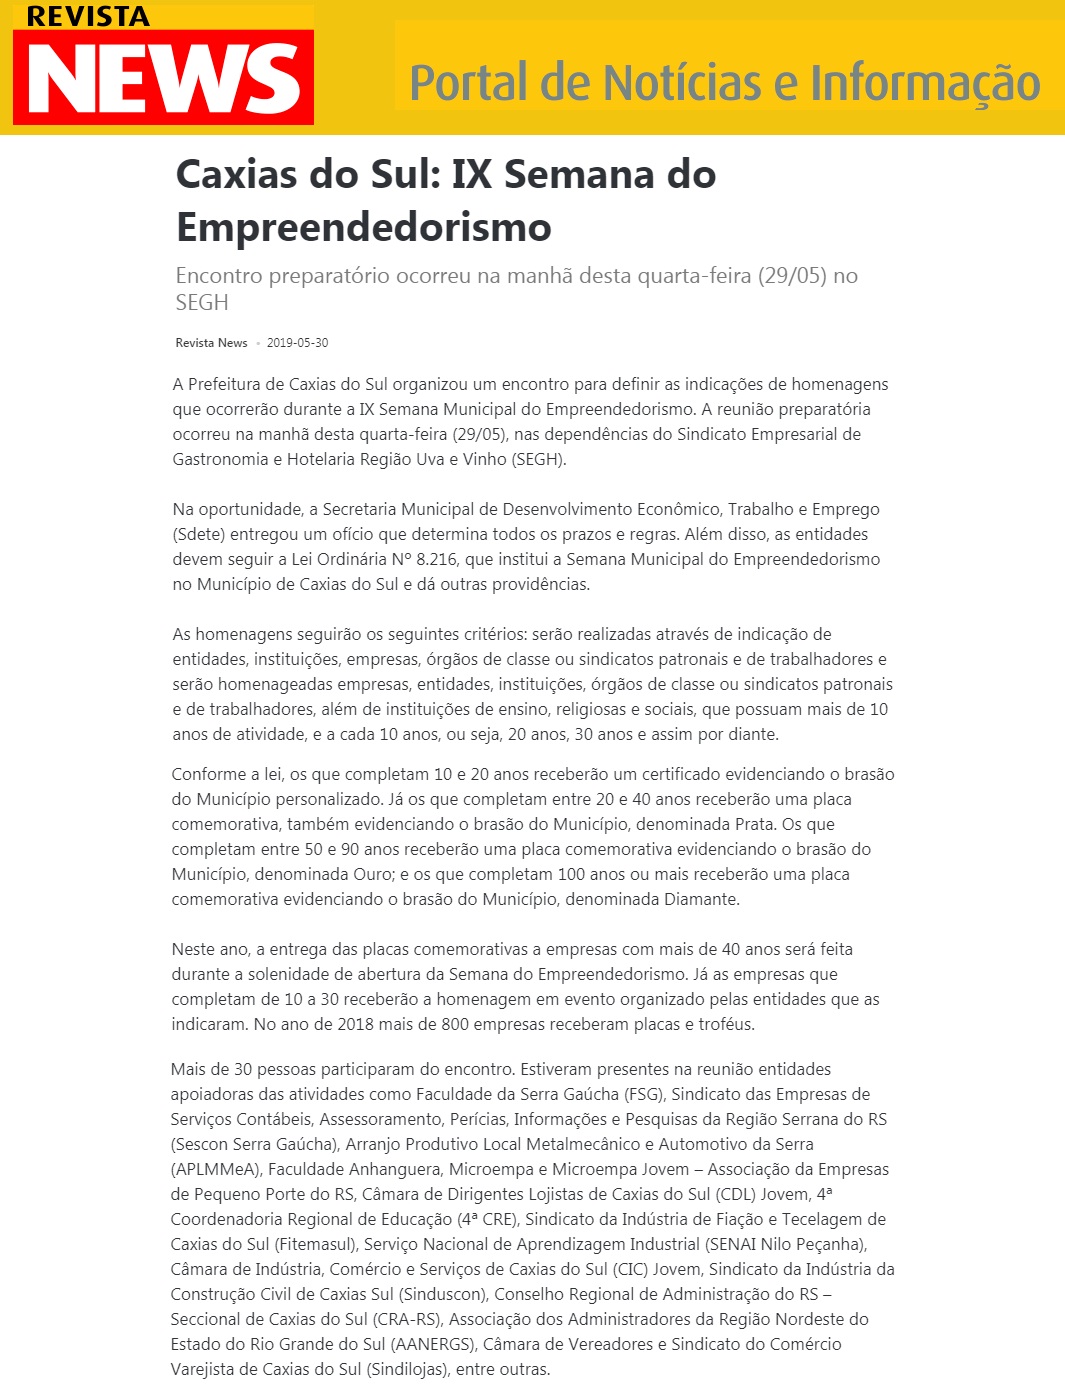 IX Semana do Empreendedorismo de Caxias do Sul